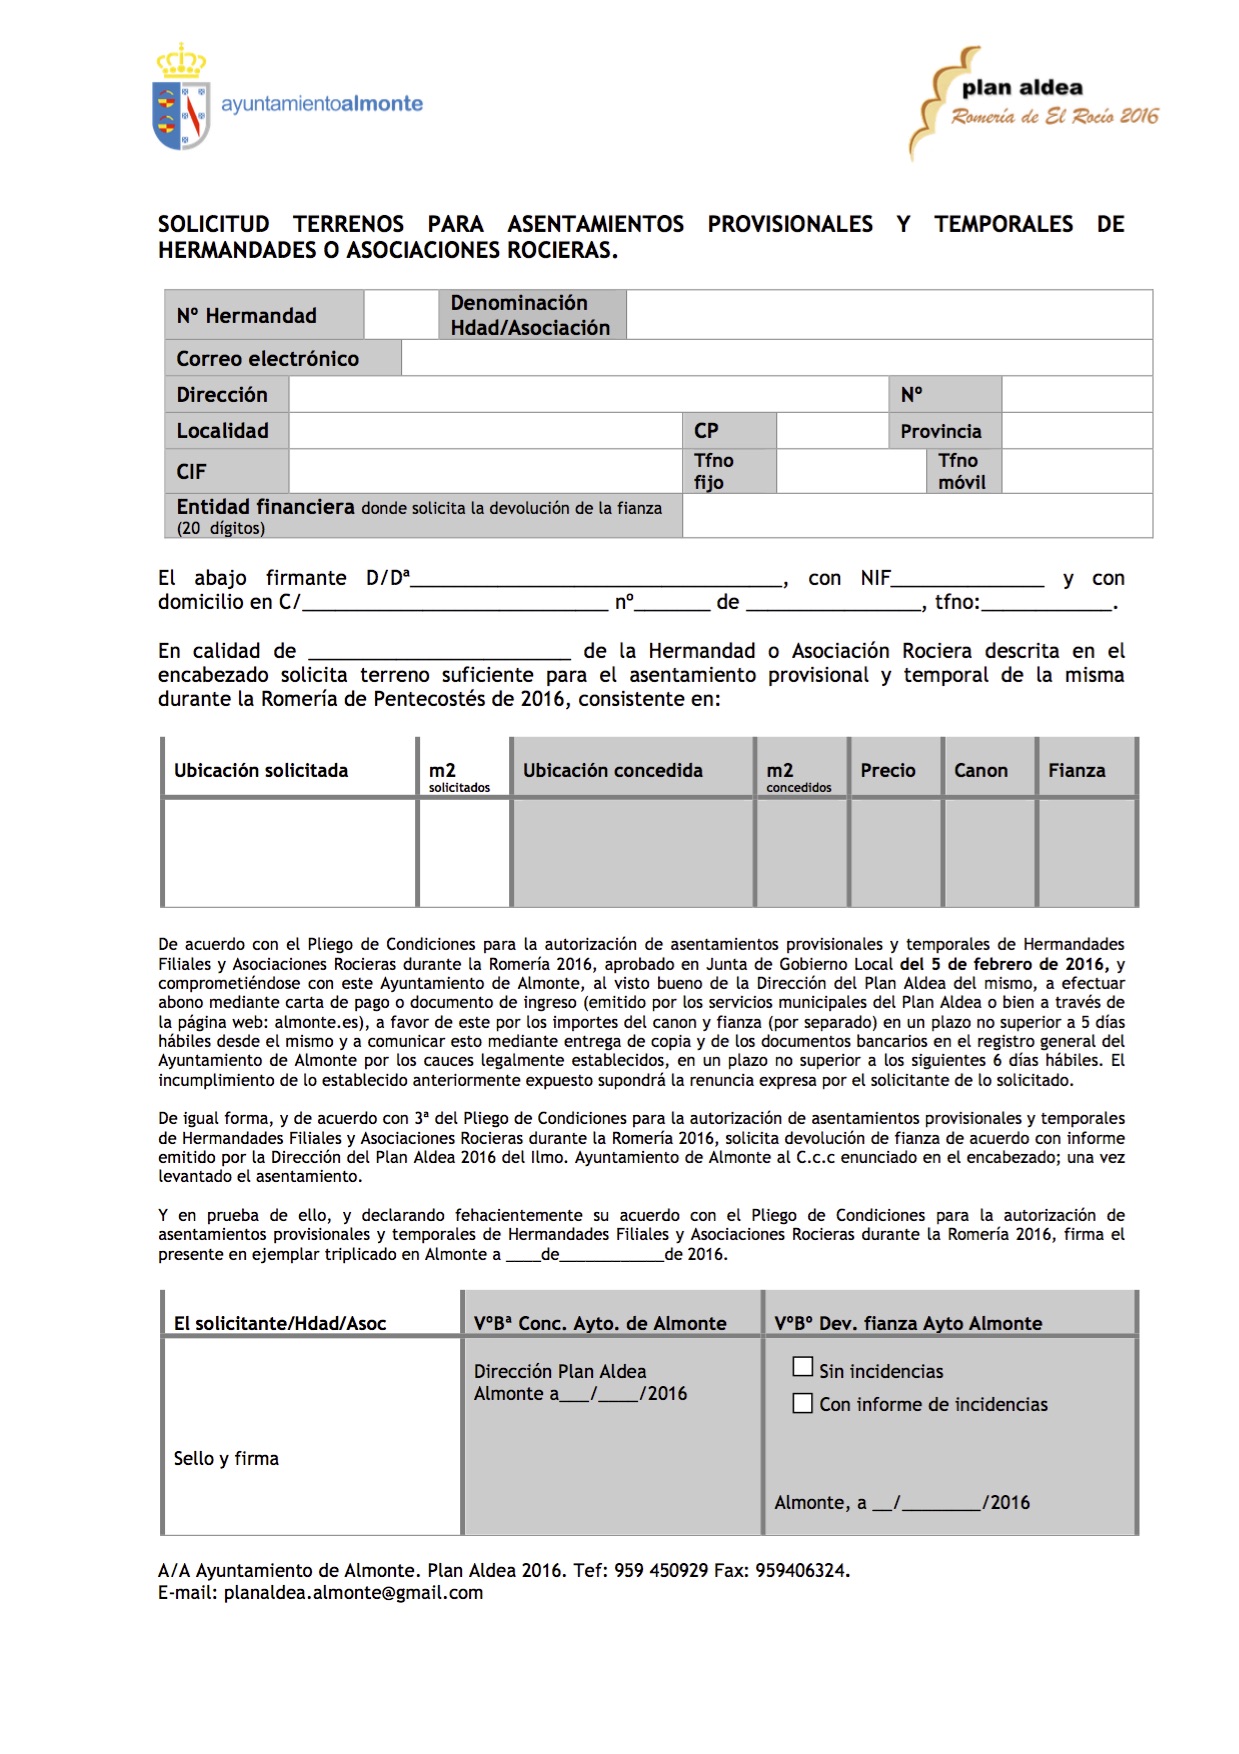 Plan-Aldea-Solicitud-terrenos-HERMANDADES-2016-formulario